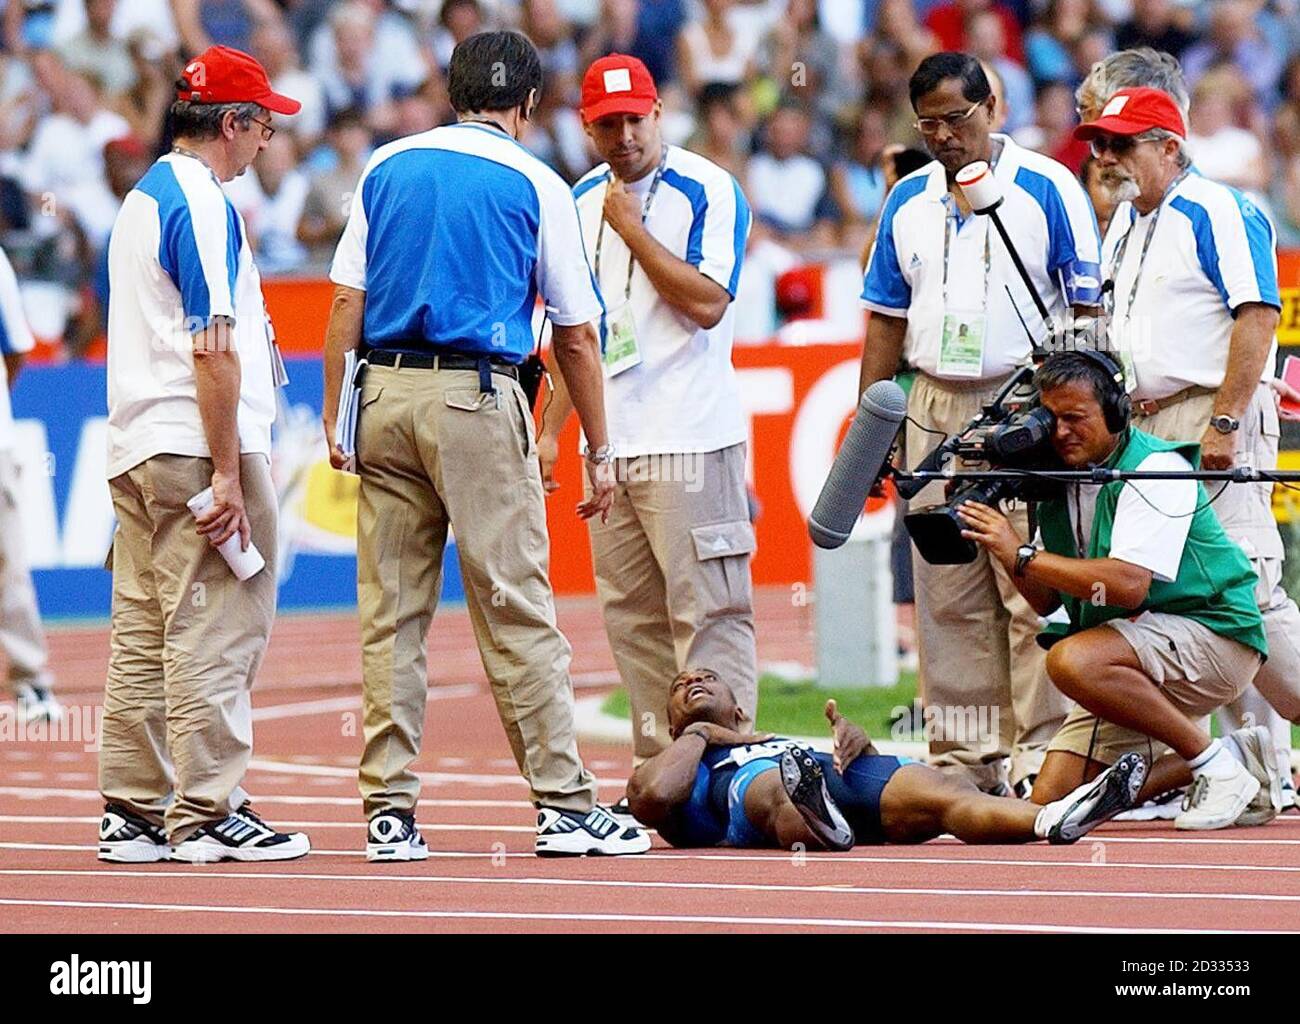 Les officiels entourent Jon Drummond (en bas) des États-Unis alors qu'il se trouve sur le dos, refusant de sortir de la piste après qu'il ait été disqualifié dans le quart-finale du 100m masculin aux Championnats du monde d'athlétisme à Paris, en France, le dimanche 24 août 2003. Banque D'Images